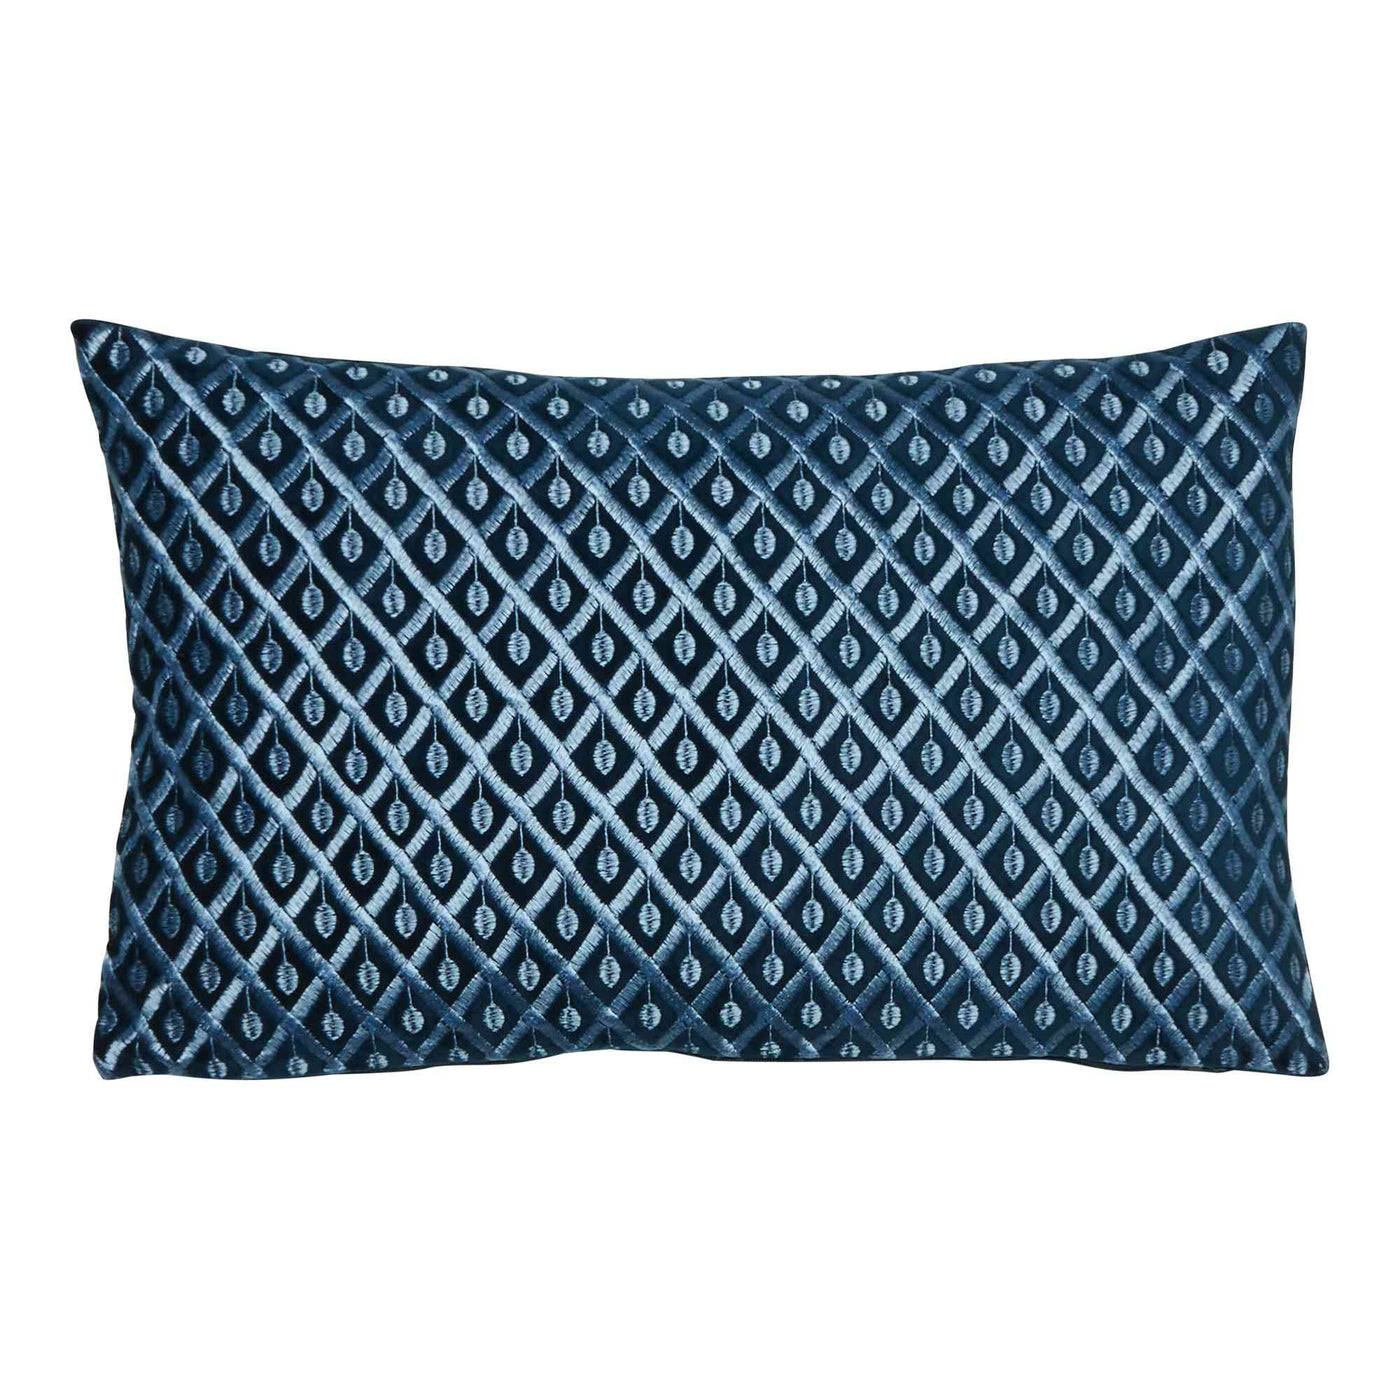 Suri Lattice Rectangle Velvet Cushion Cover (55x35cm)-Cushion-LUXOTIC